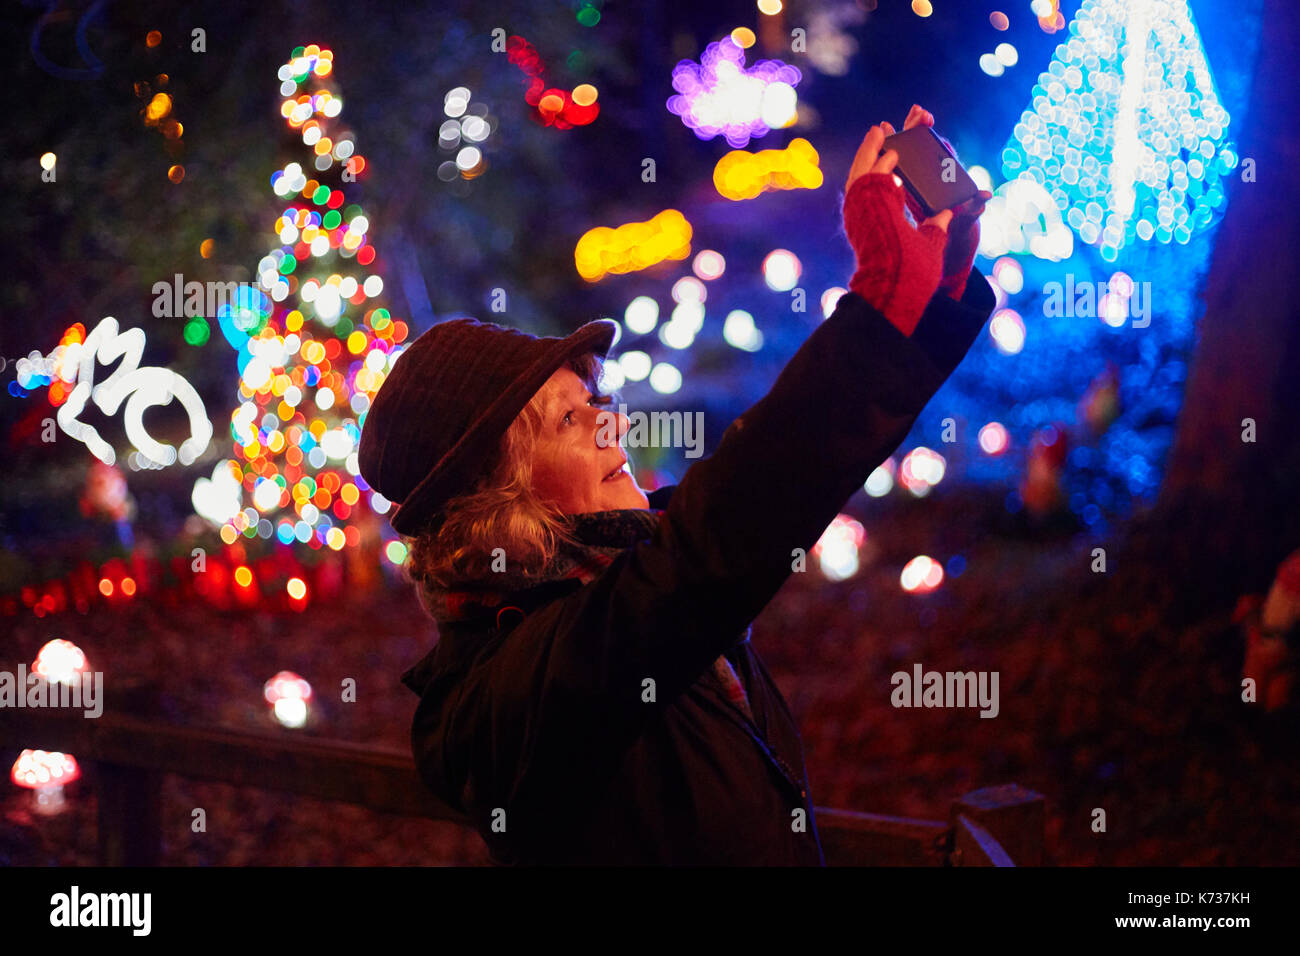 Poeta janet lees tomando una foto con el iphone de luces en la noche de Navidad Foto de stock